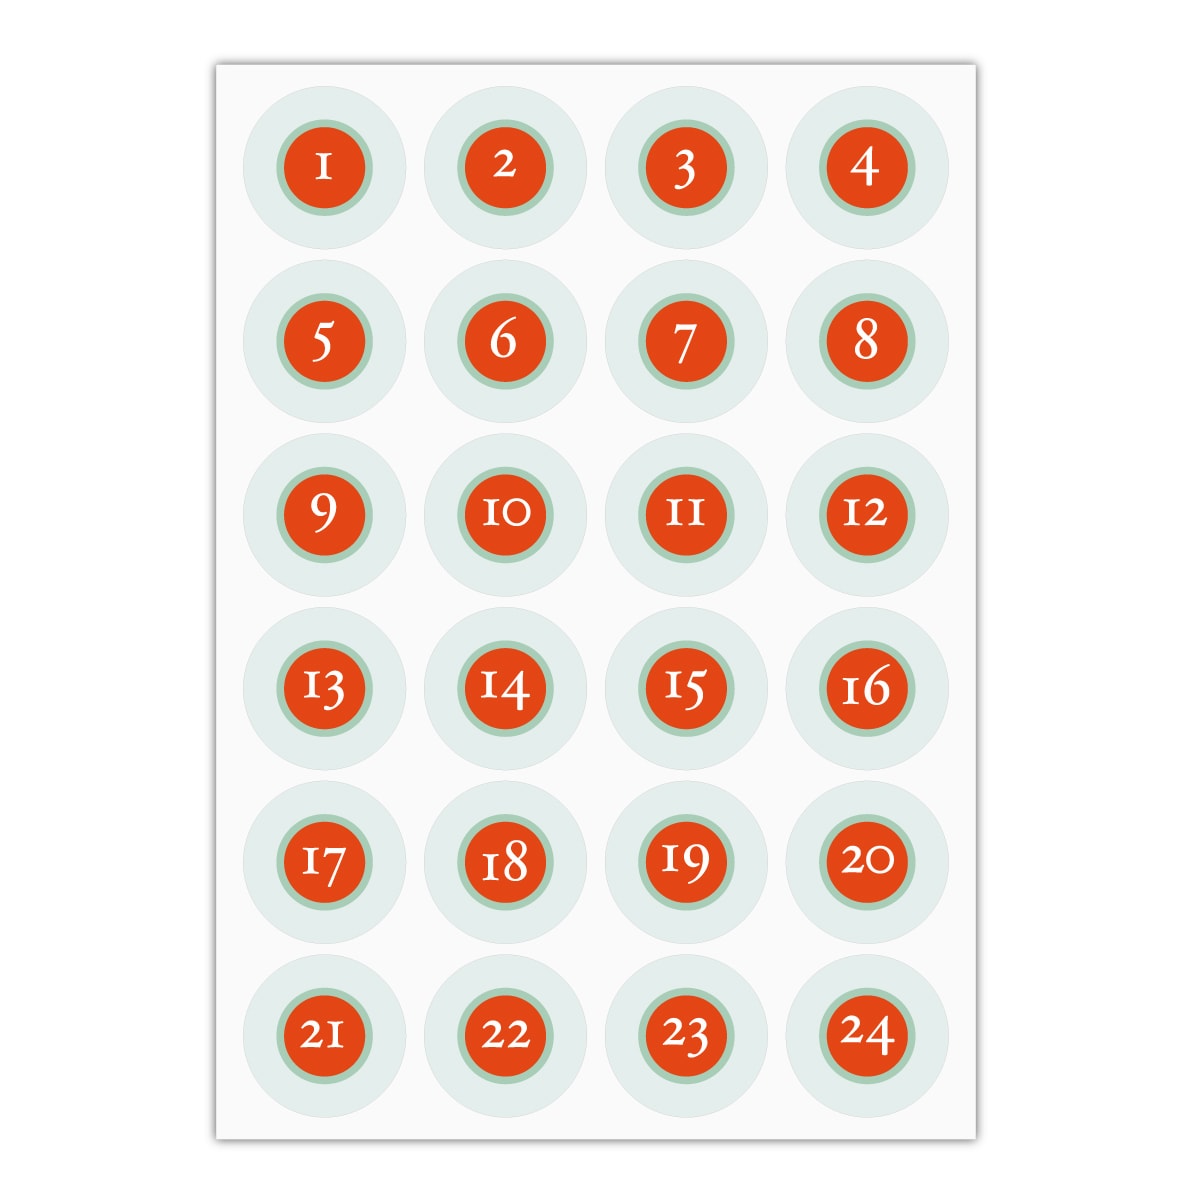 Kartenkaufrausch Sticker in orange: klassisch, reduzierte Advents Aufkleber